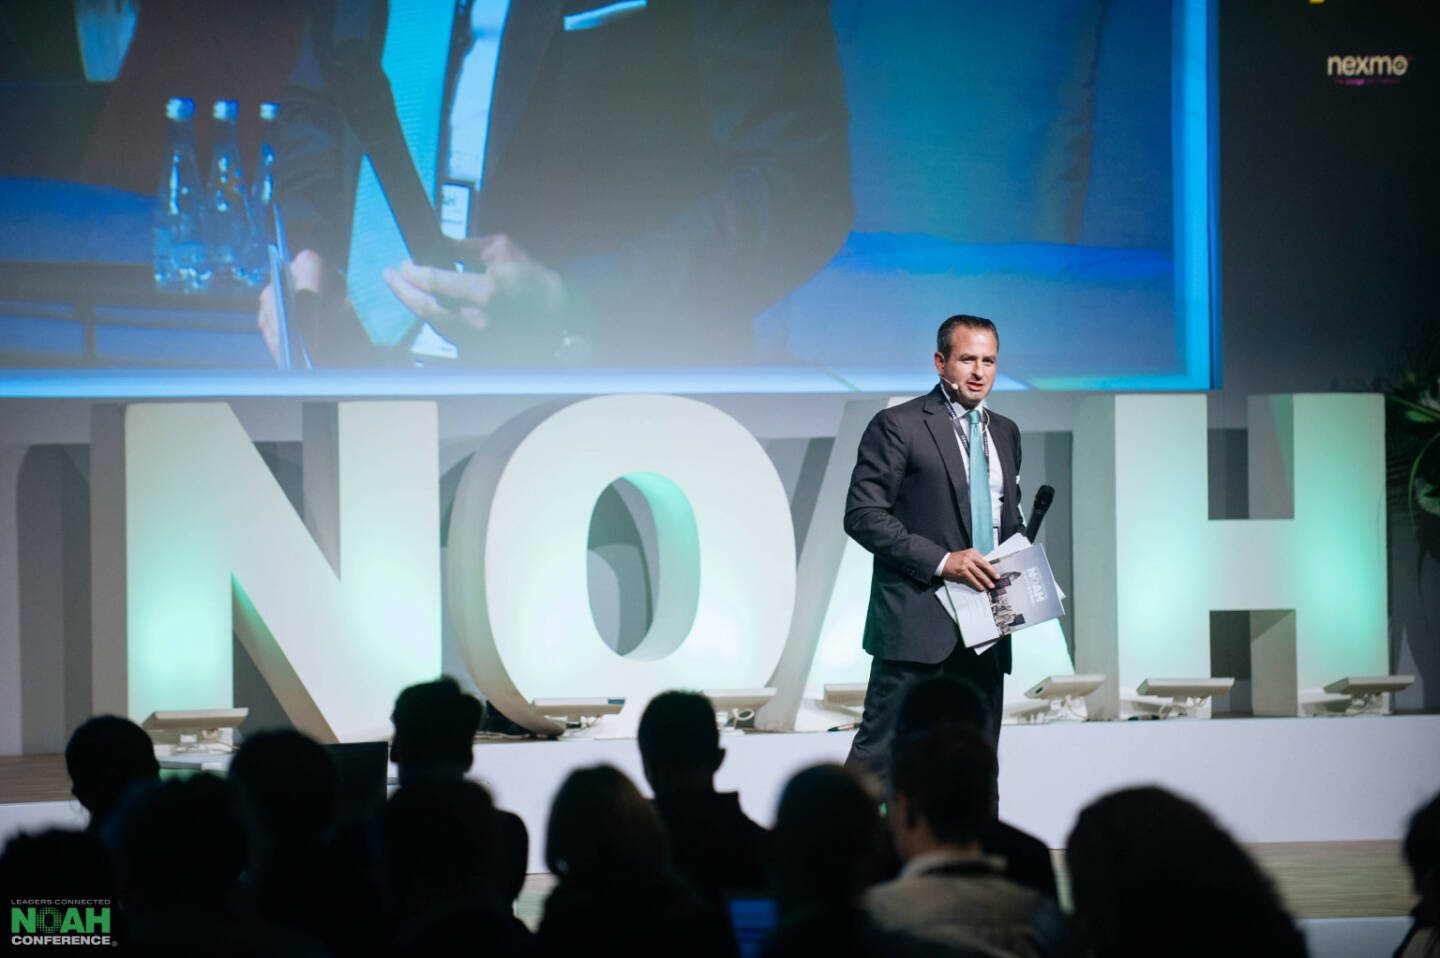 NOAH Conference: Connecting Entrepreneurs with Capital: Die NOAH Conference 2019 am 30. und 31. Oktober in London bringt führende Investoren und Digitalunternehmer zusammen, Fotocredit: NOAH Conference